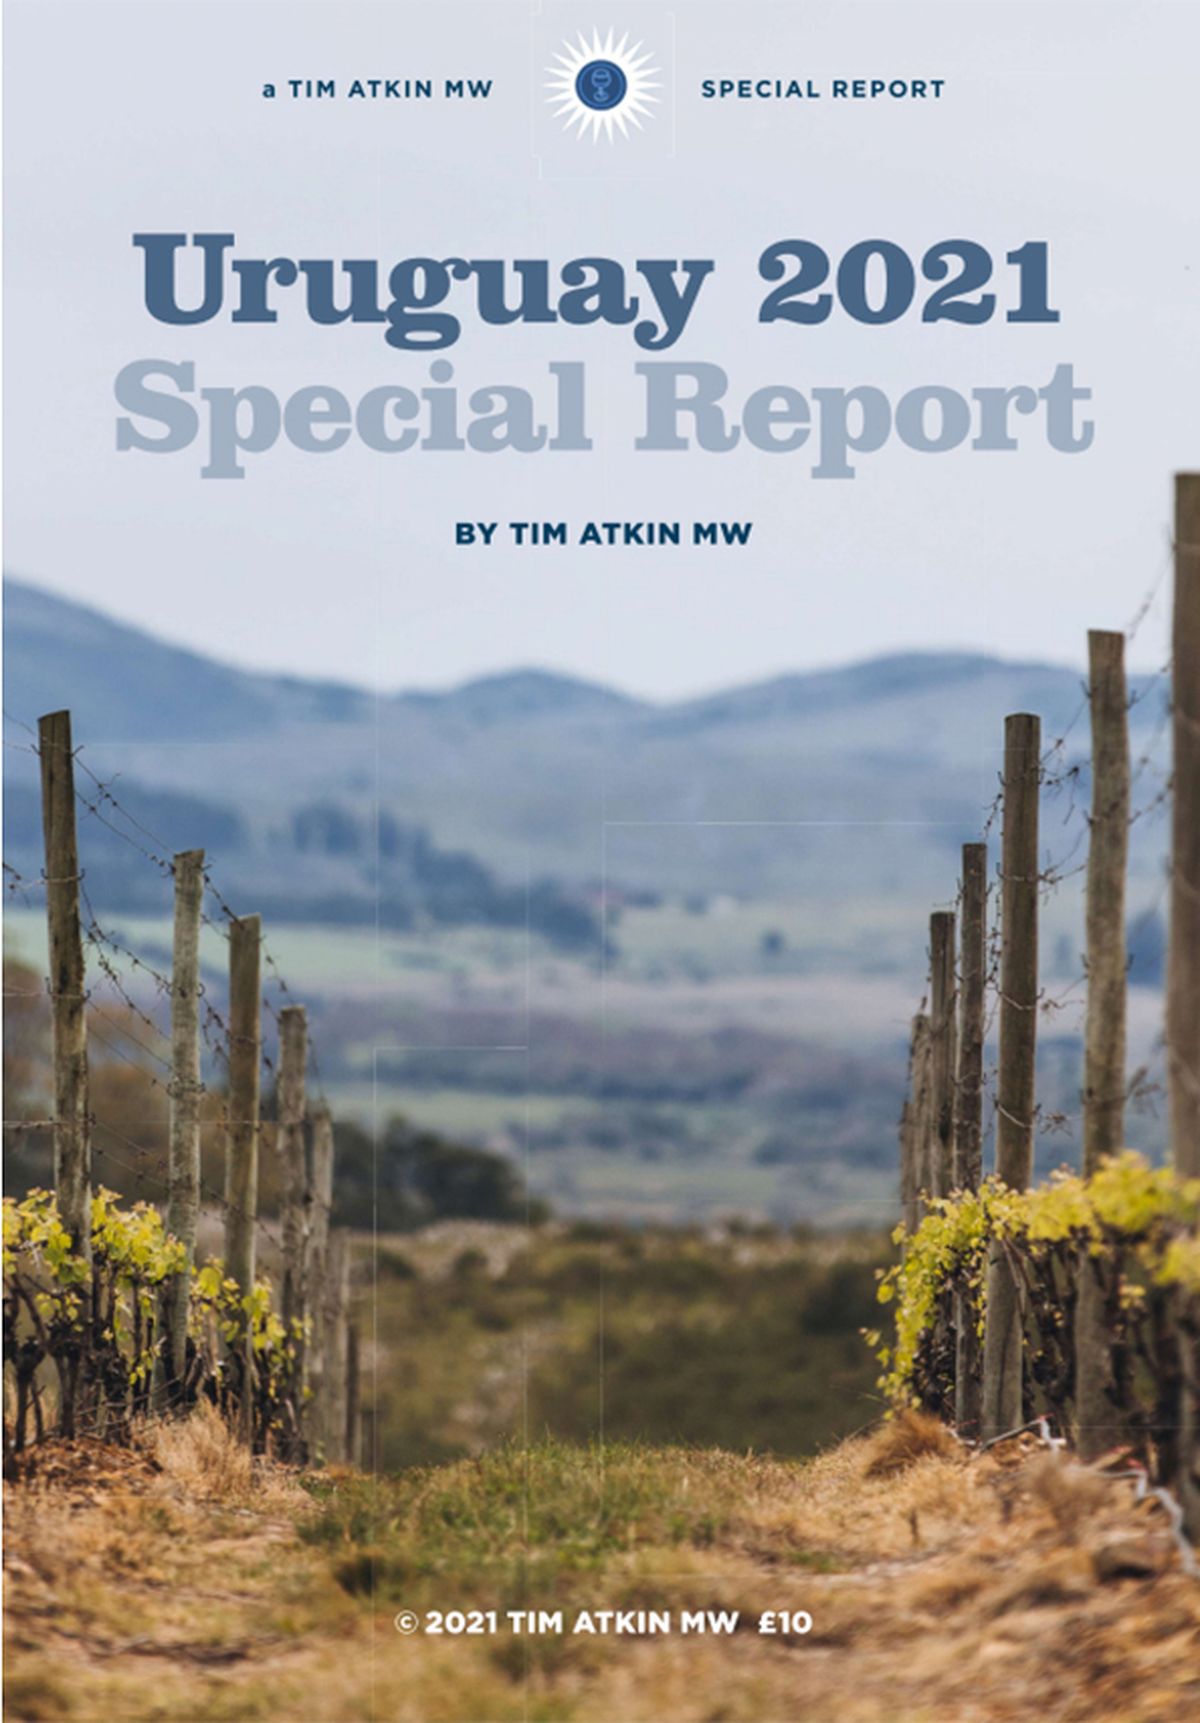 Uruguay está elaborando los mejores vinos de su historia